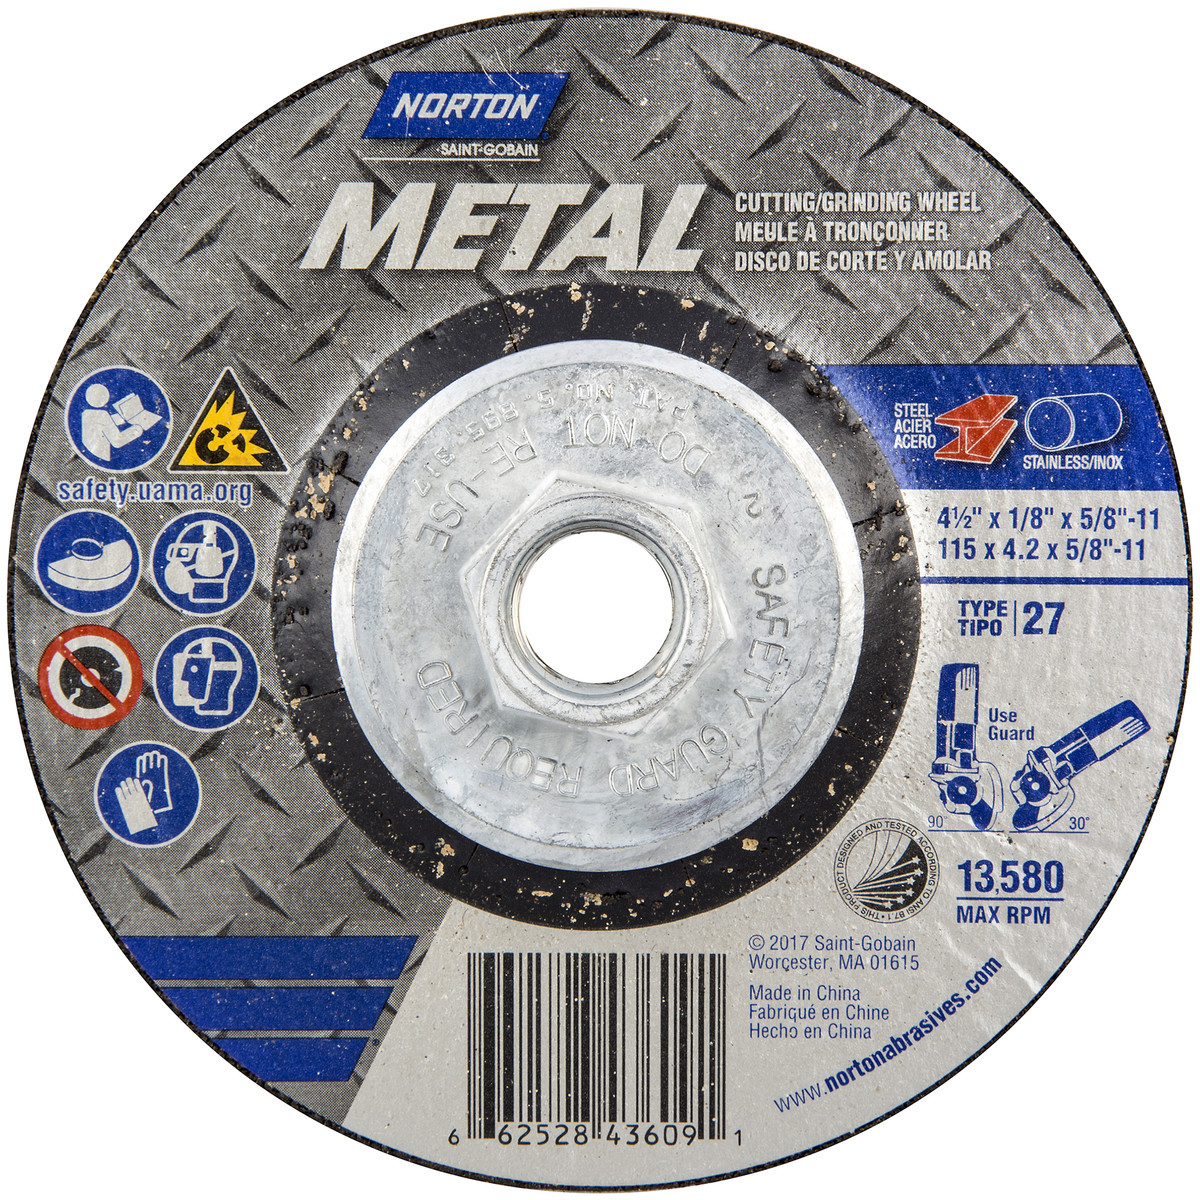 4 Diameter x 1/4 Thickness Type 27 5/8 Arbor Norton Metal Depressed Center Abrasive Wheel Aluminum Oxide Pack of 25